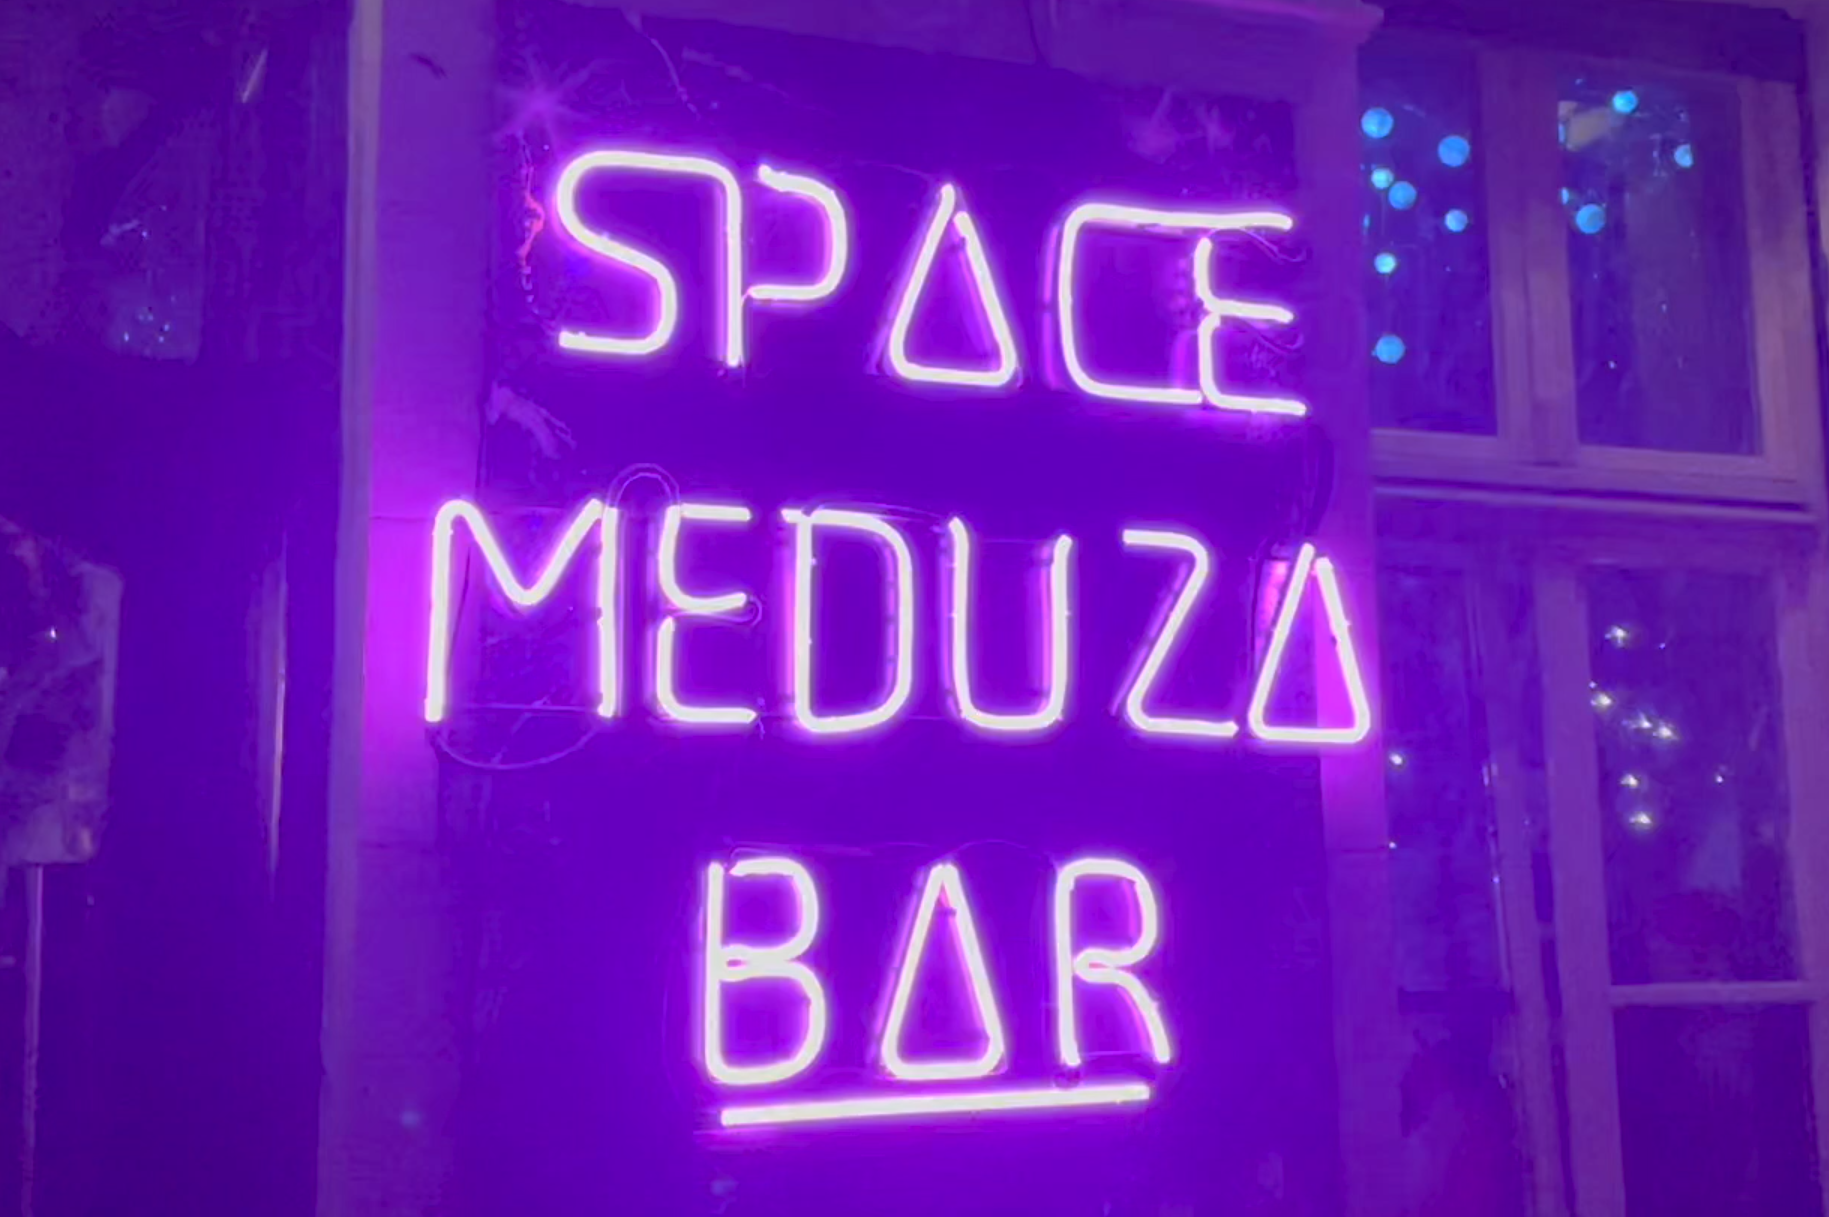 Wie passen Krieg und Humor zusammen? – In der Kreuzberger Bar Space Meduza treffen sich Comedians aus der Ukraine (Video)